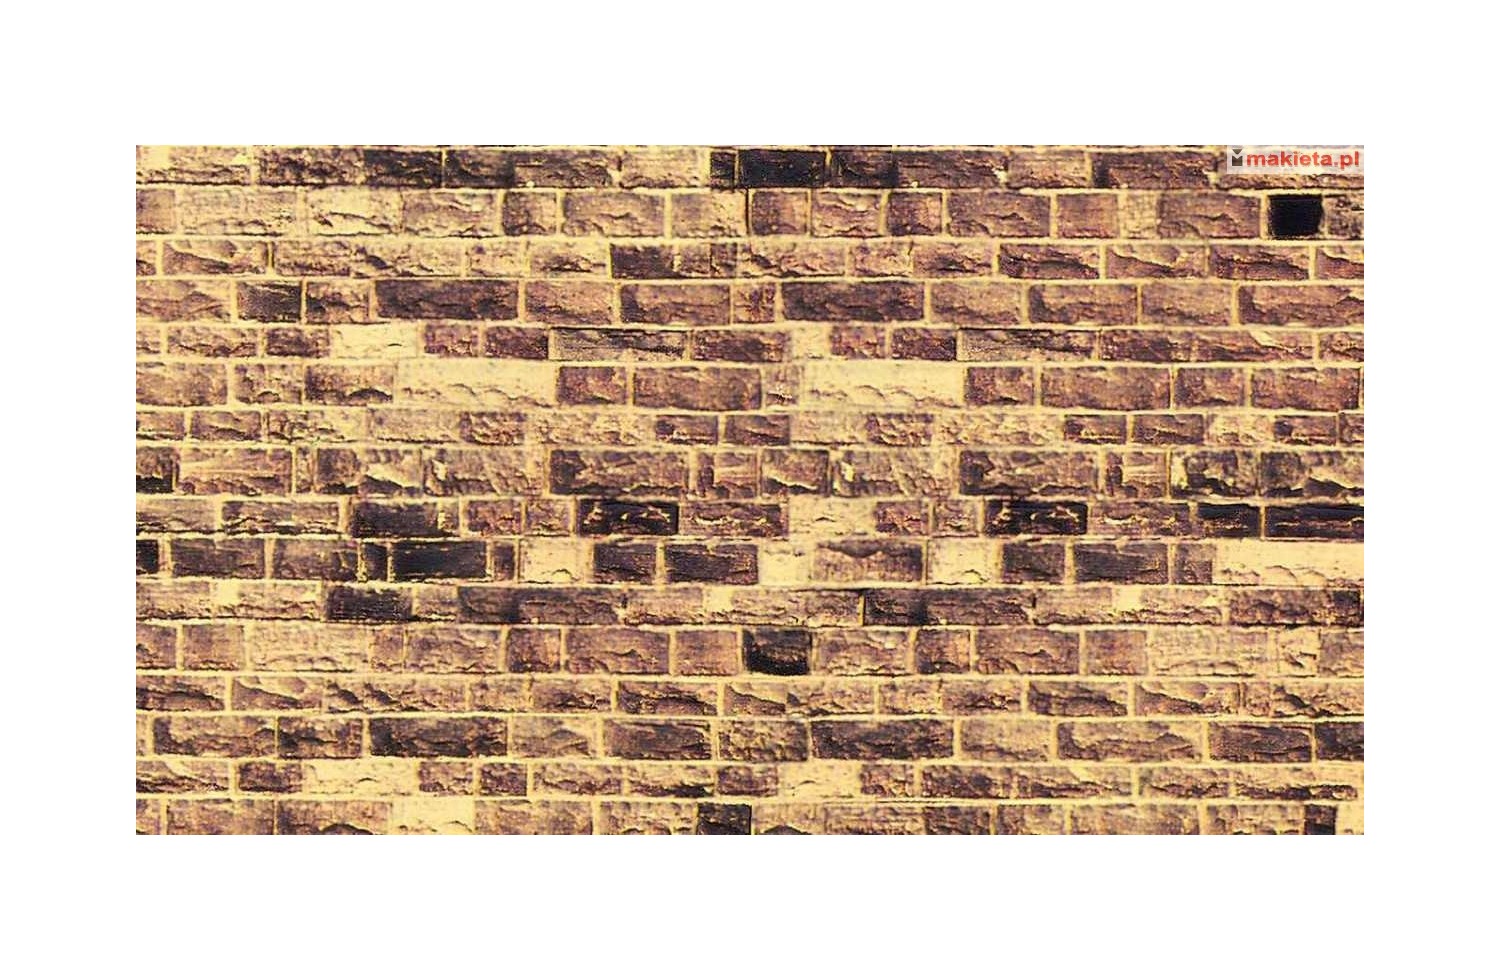 NOCH 57570. Mur z piaskowca, dekor kartonowy strukturalny, wytłaczany, 32 x 15 cm, skala H0 / TT